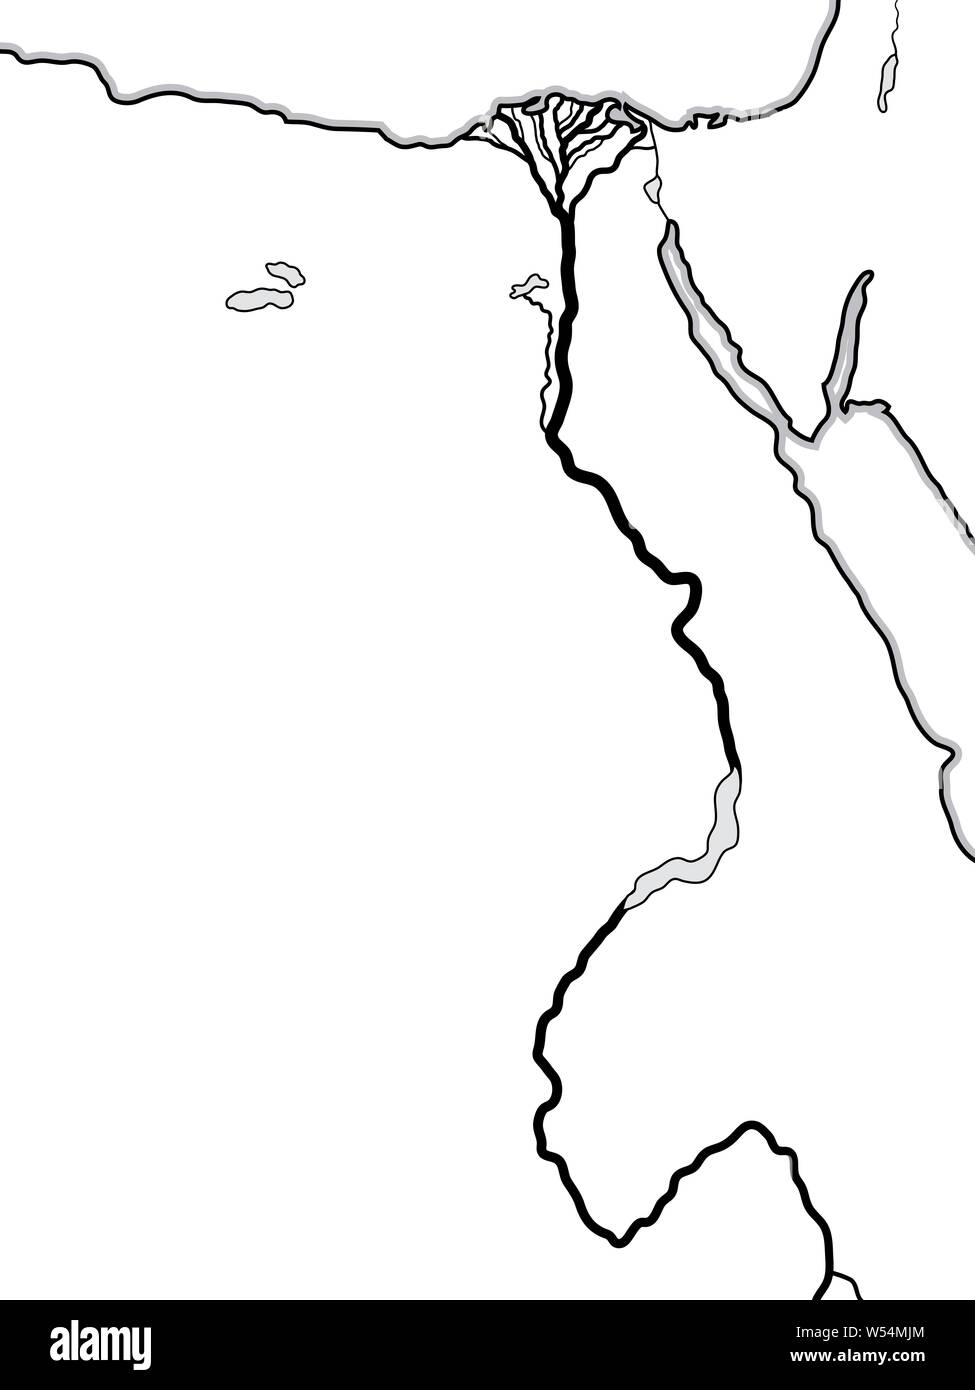 Carte du monde de l'Égypte et la Libye : l'Afrique du Nord, l'Égypte et la Haute Égypte, le Nil et son delta. Carte géographique avec littoral & rivière fertile. Banque D'Images